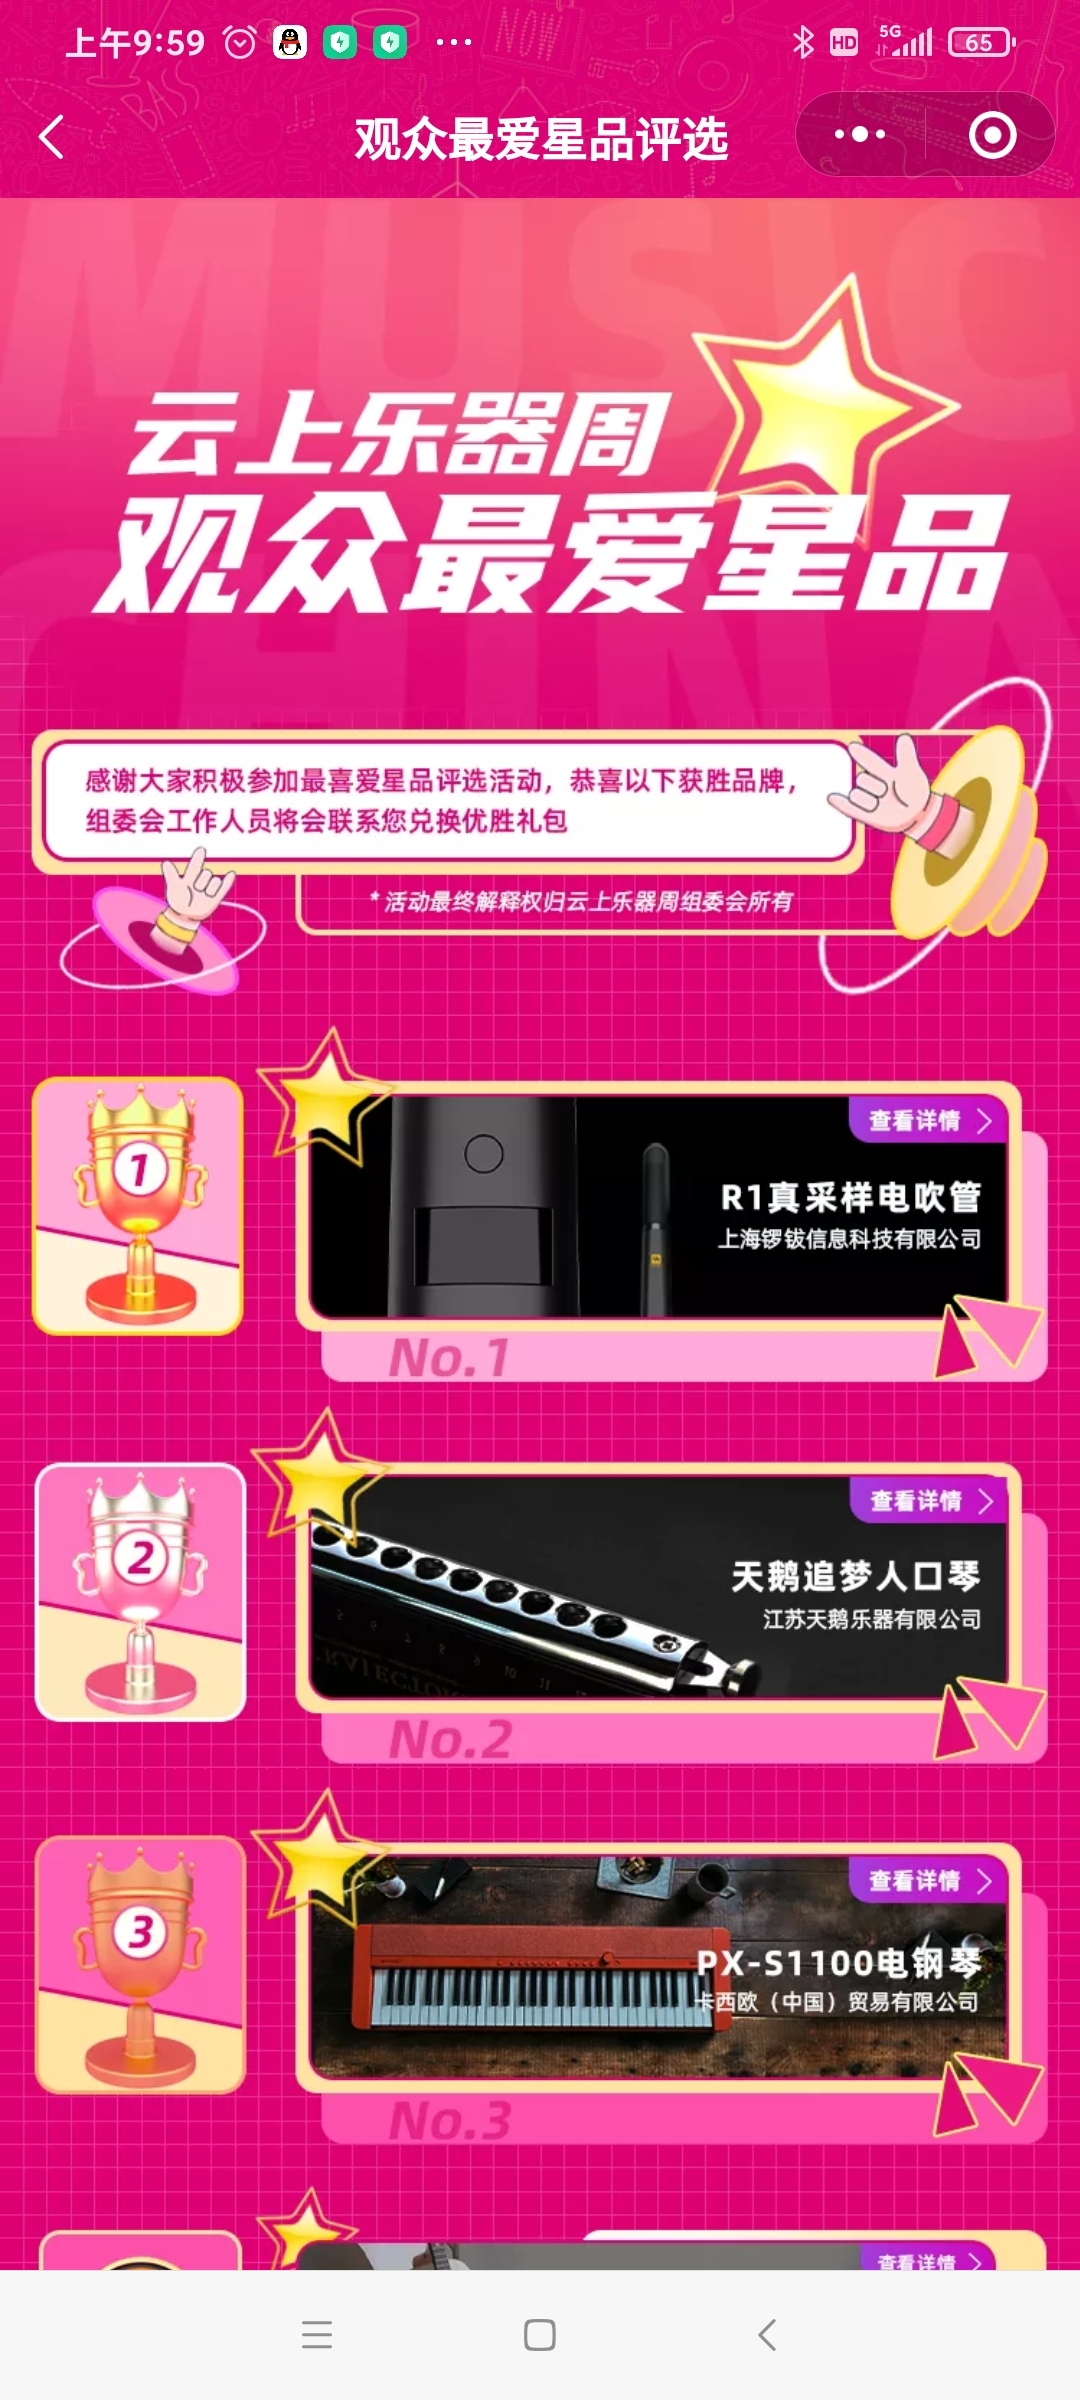 r1电吹管获上海乐展“观众最爱星品”第一名